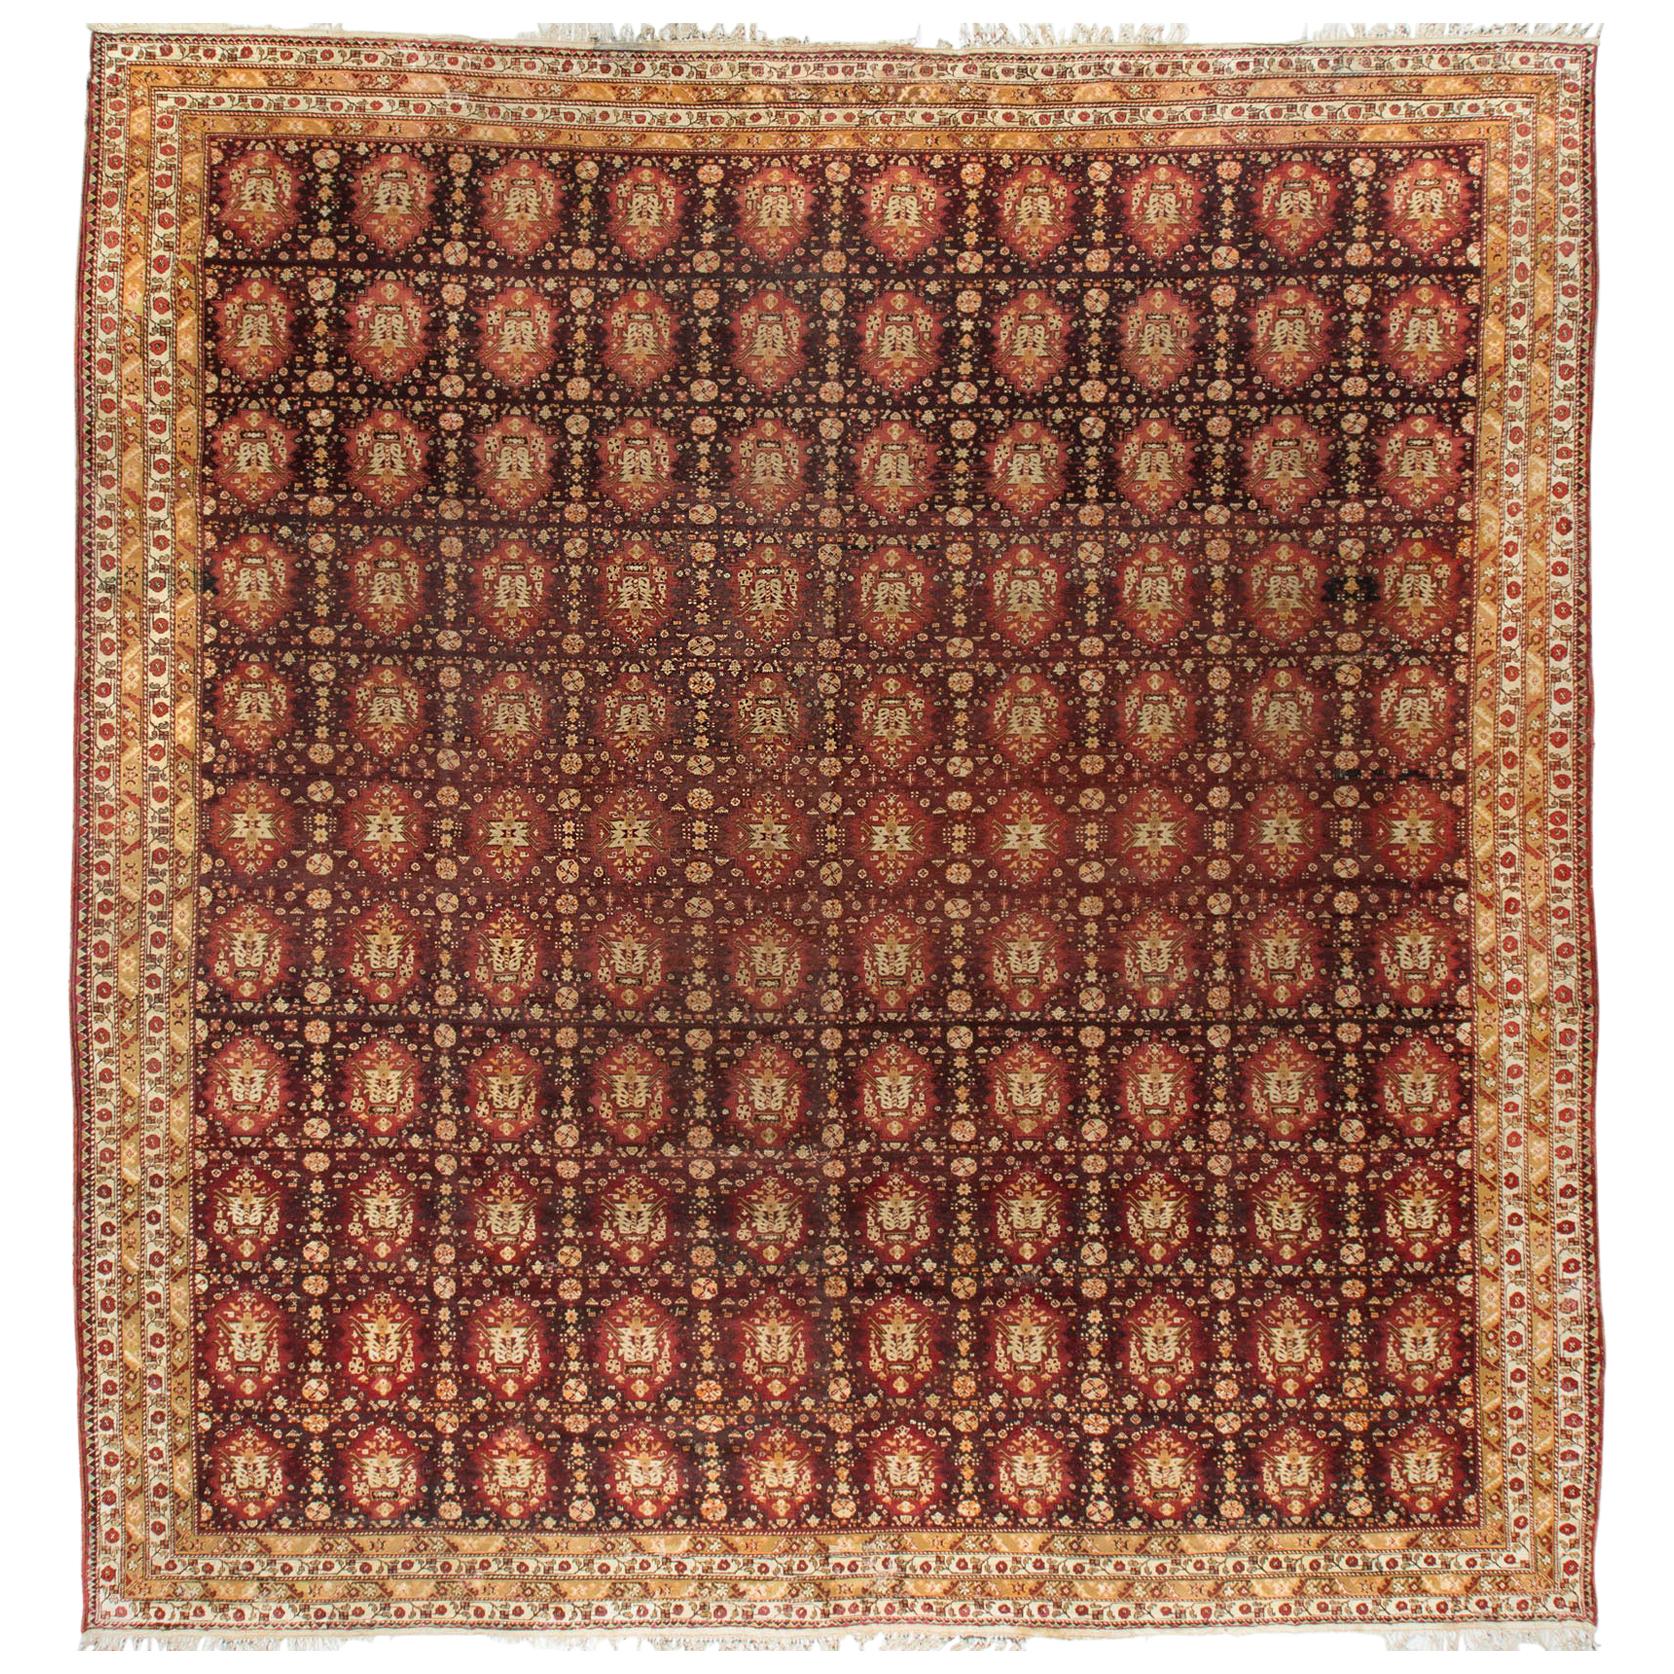 Antique Square Agra Rug, circa 1880  18' x 18'8